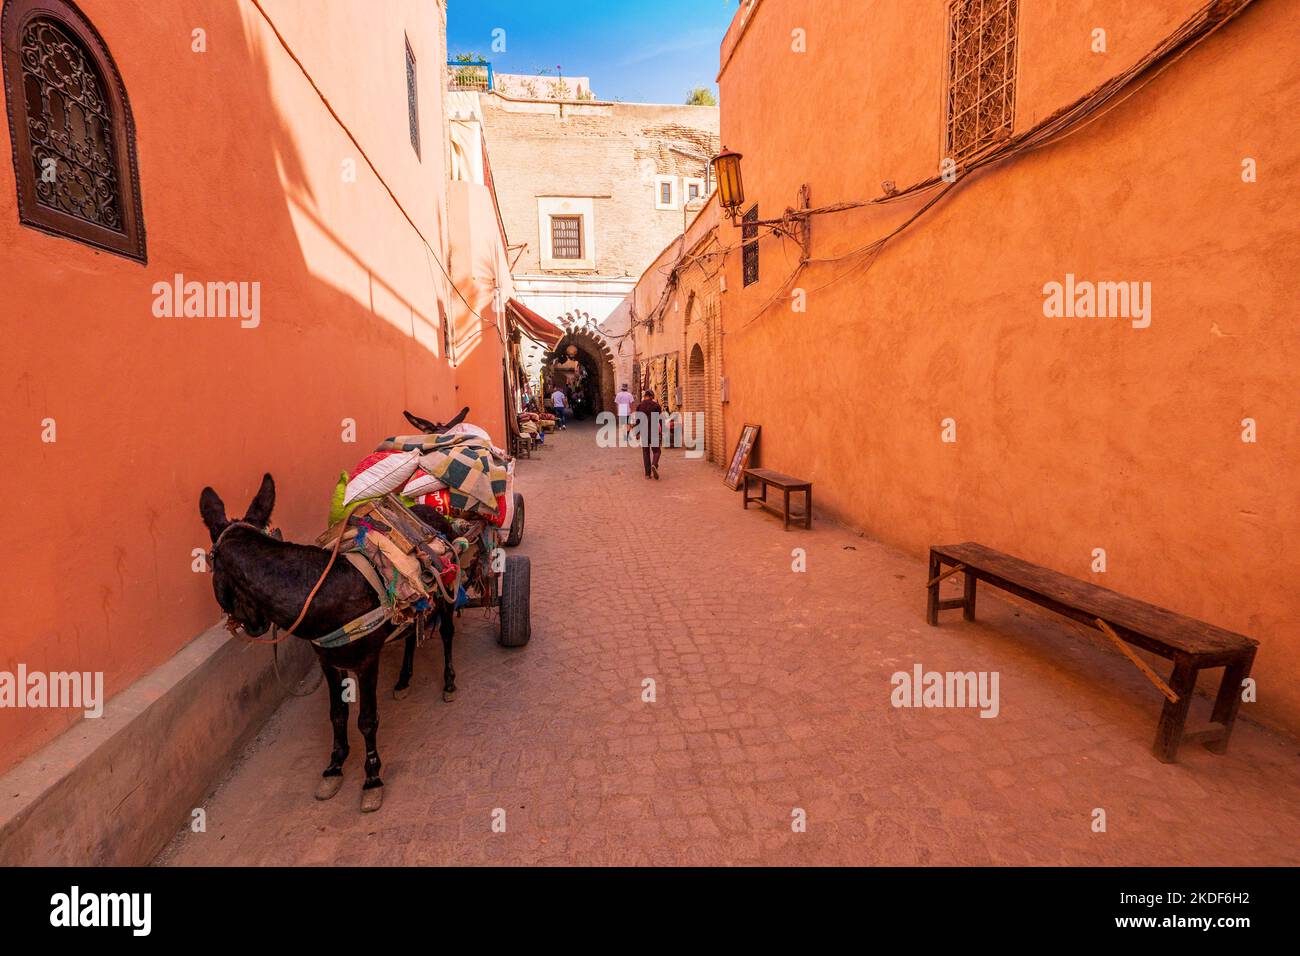 Nella medina (città vecchia) di Marrakech, gli asini del Marocco sono ancora utilizzati per il trasporto Foto Stock